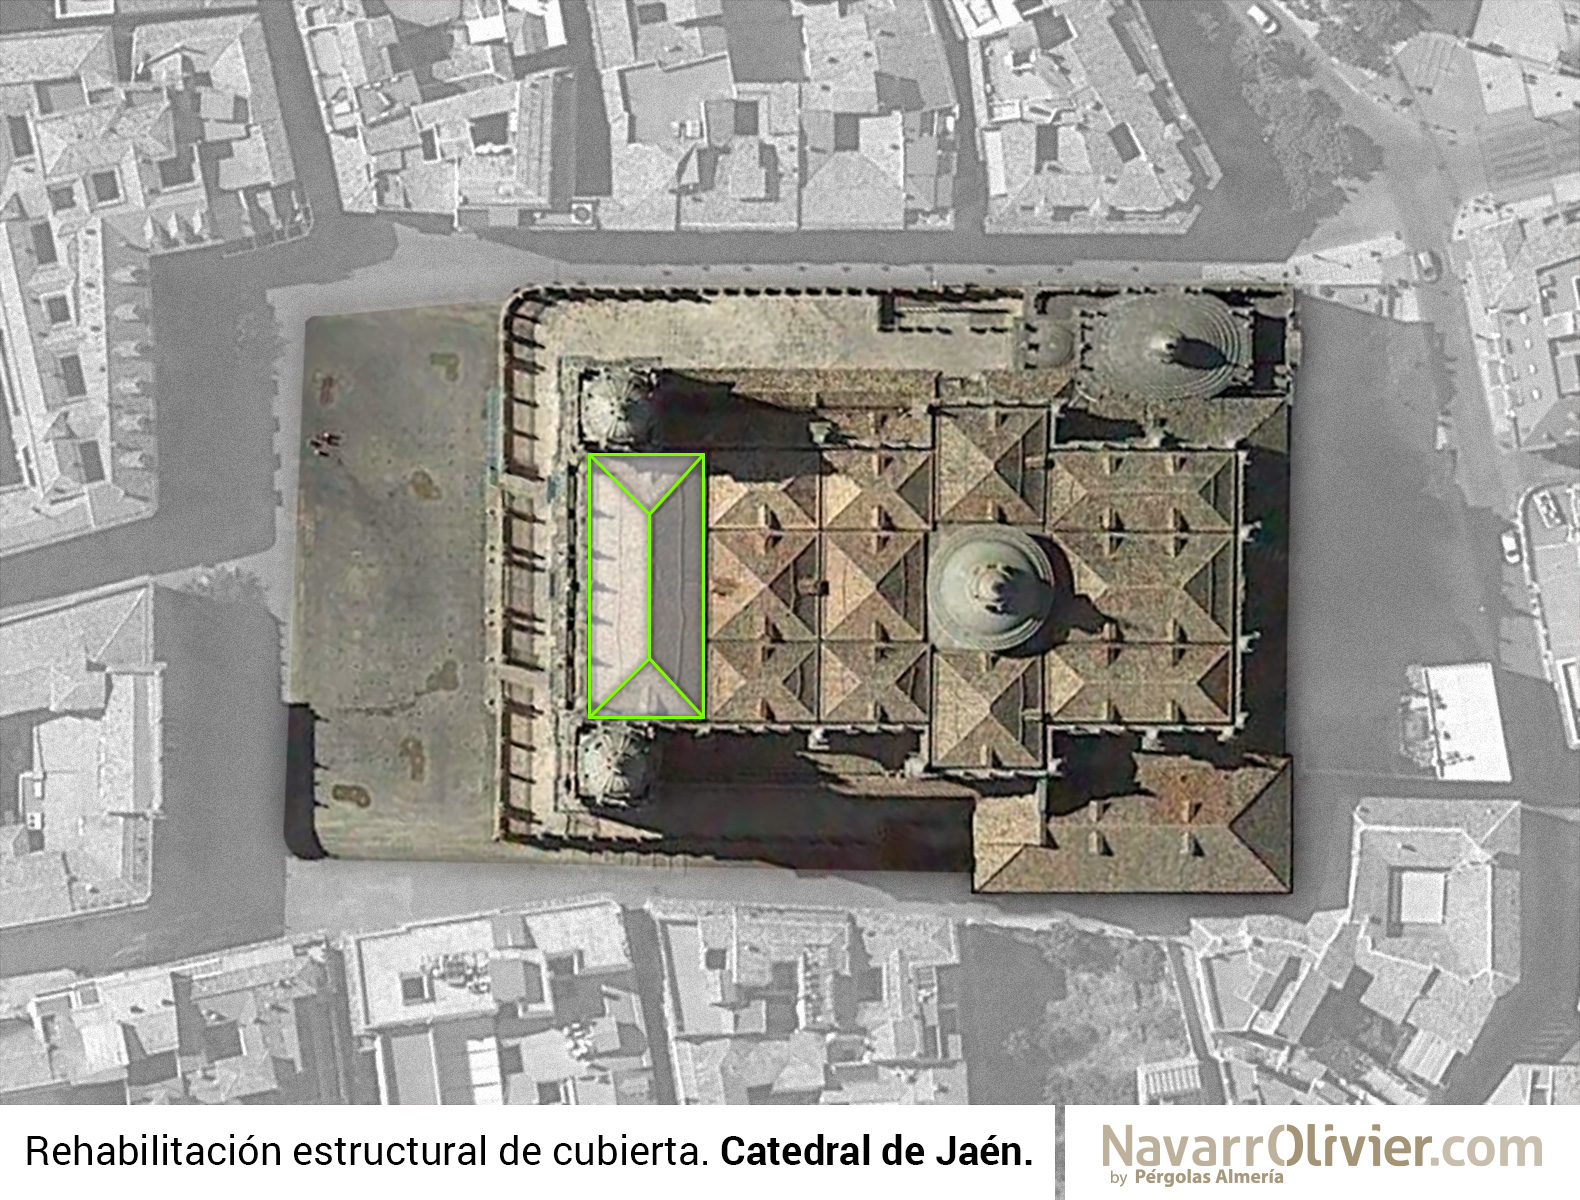 Plano de cubiertas catedral de Jaén